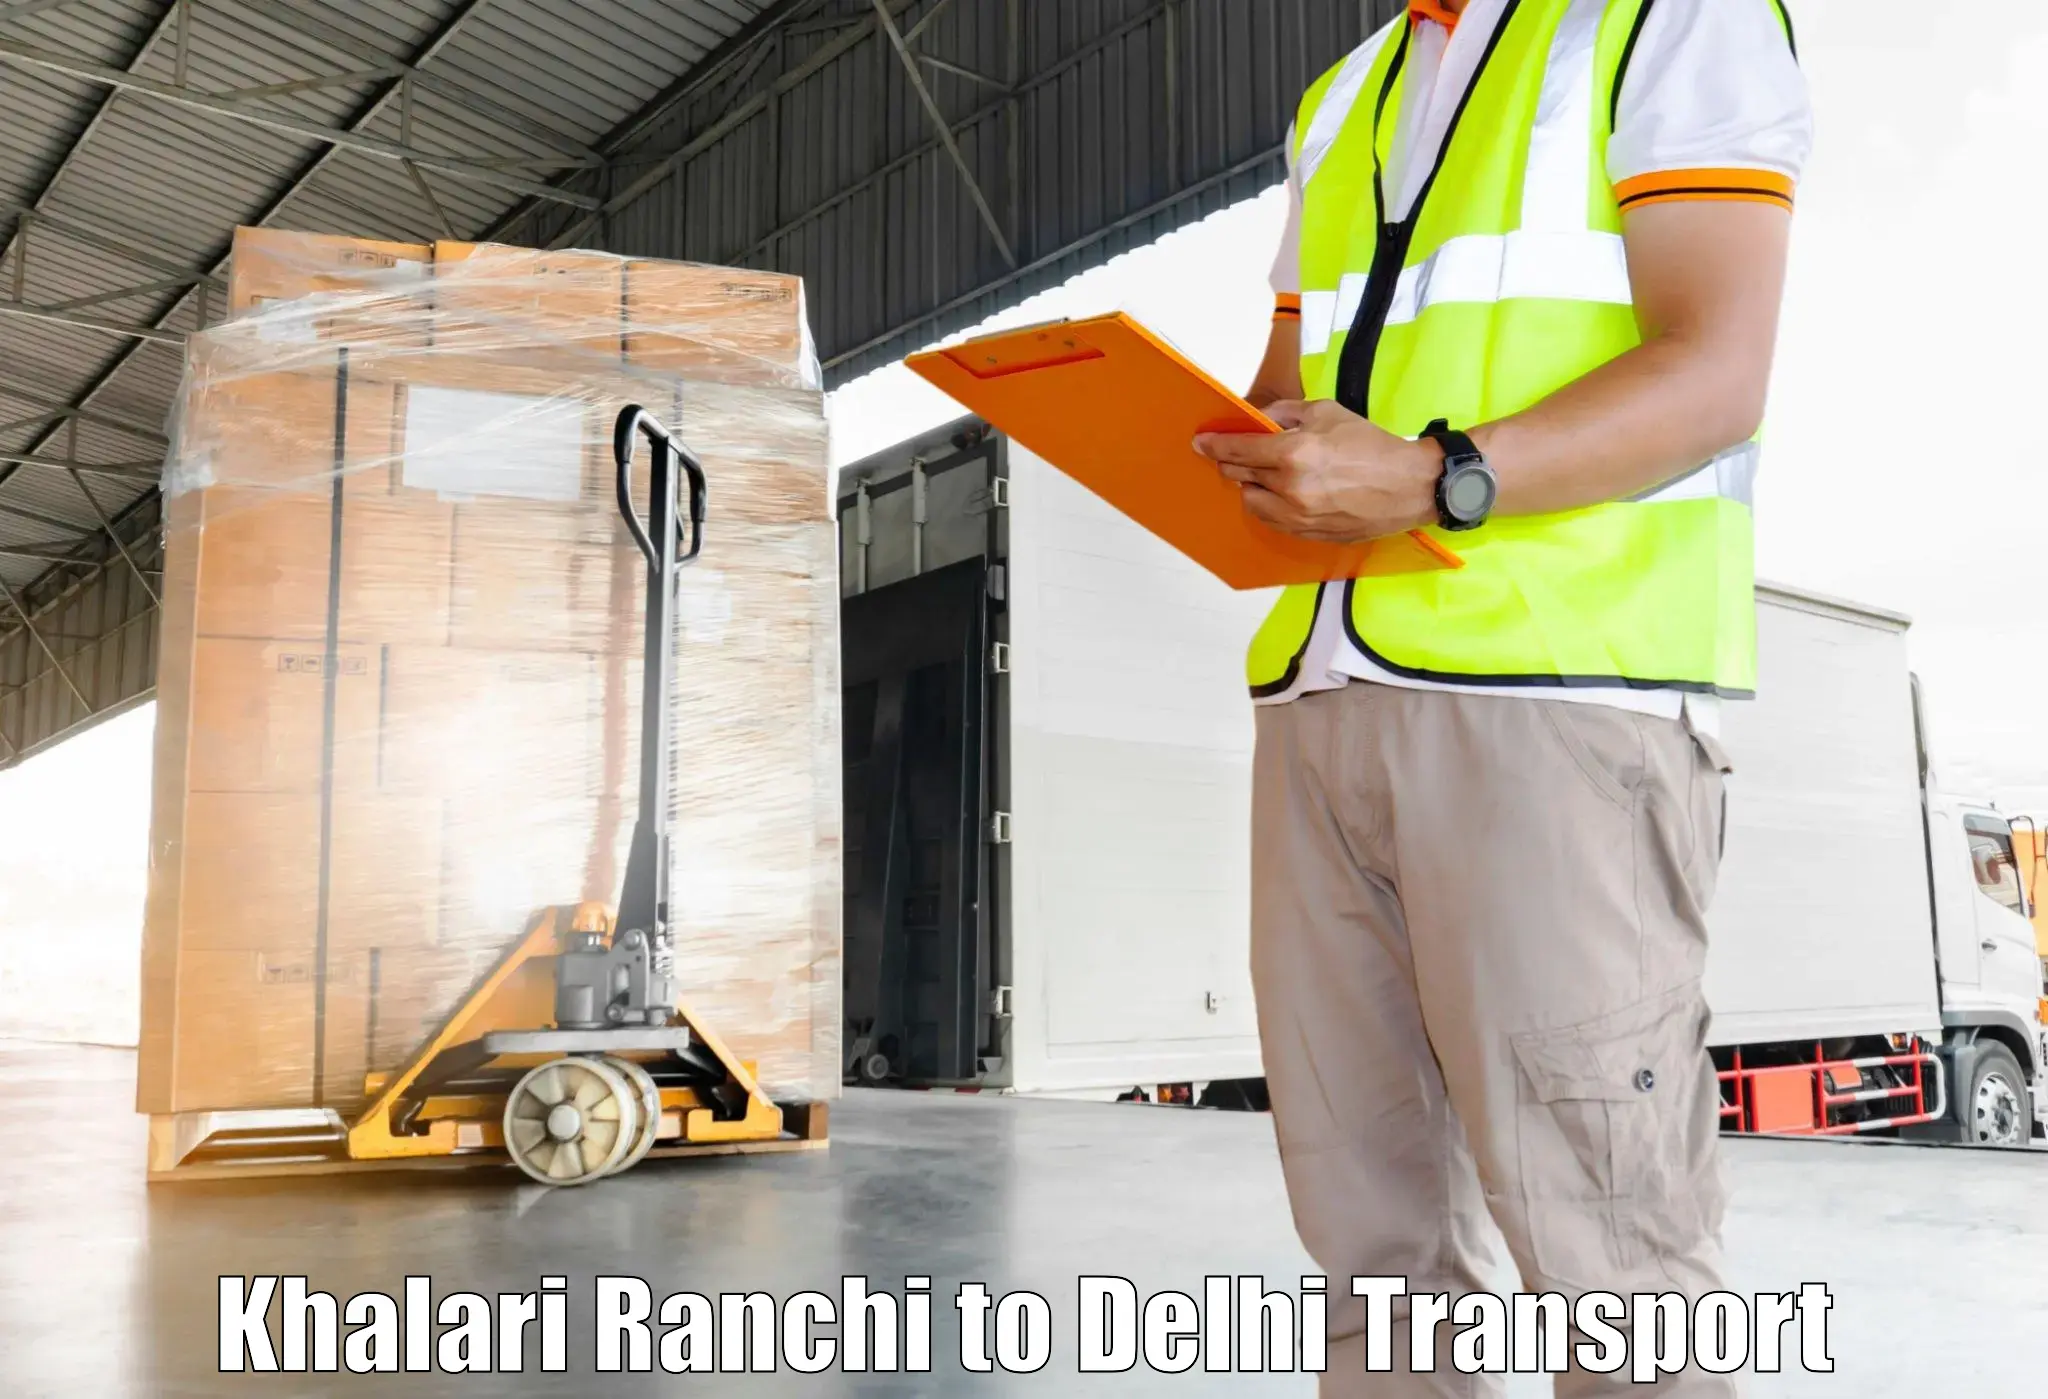 Best transport services in India in Khalari Ranchi to Burari